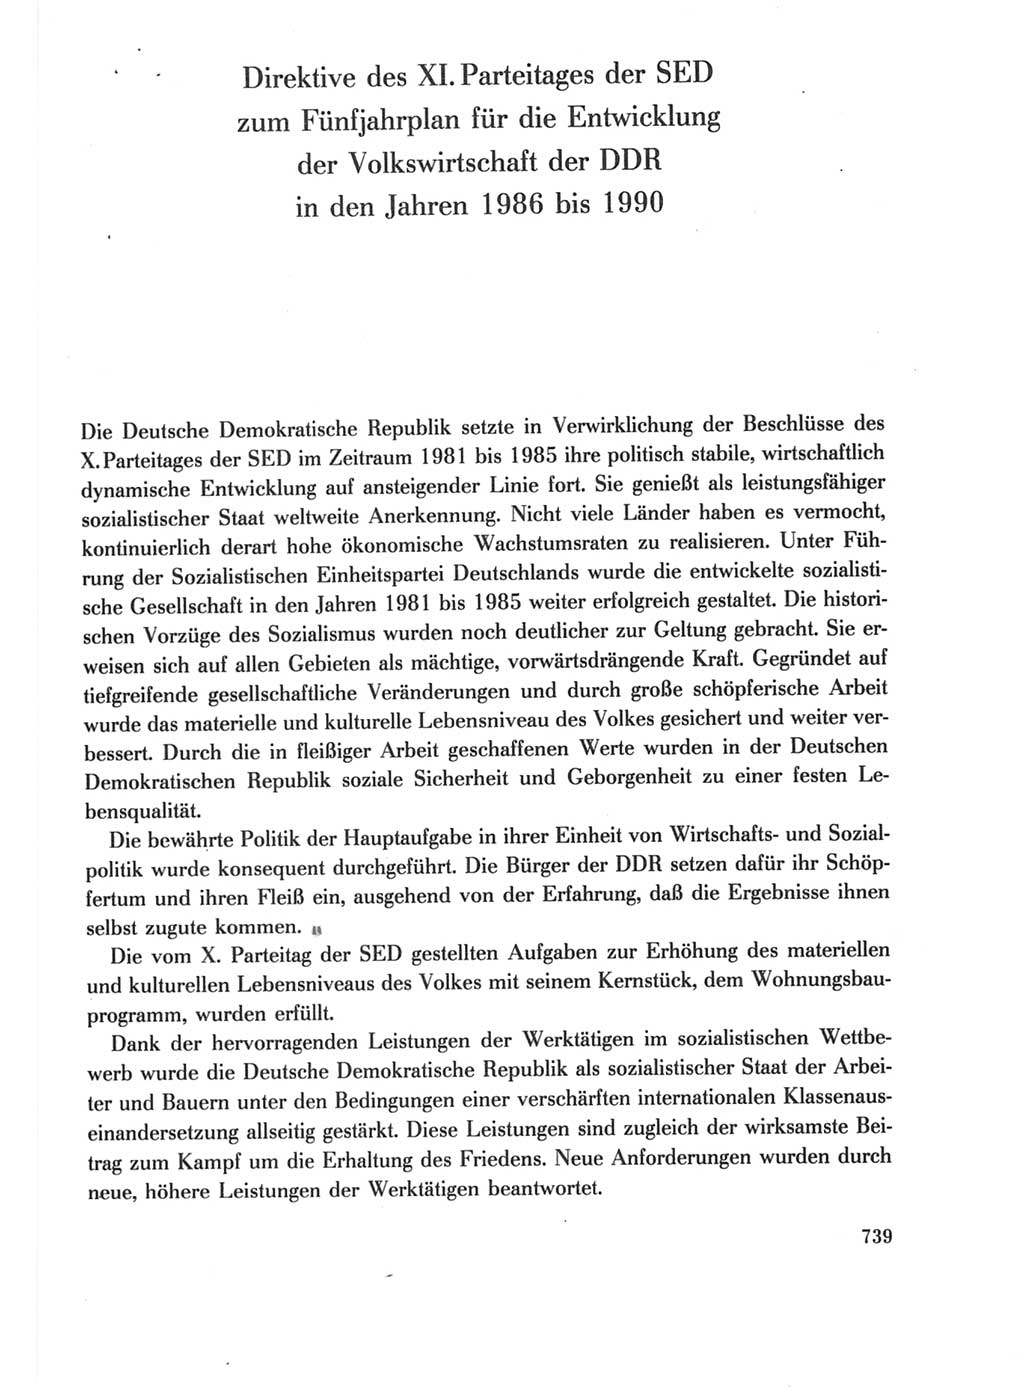 Protokoll der Verhandlungen des Ⅺ. Parteitages der Sozialistischen Einheitspartei Deutschlands (SED) [Deutsche Demokratische Republik (DDR)] 1986, Seite 739